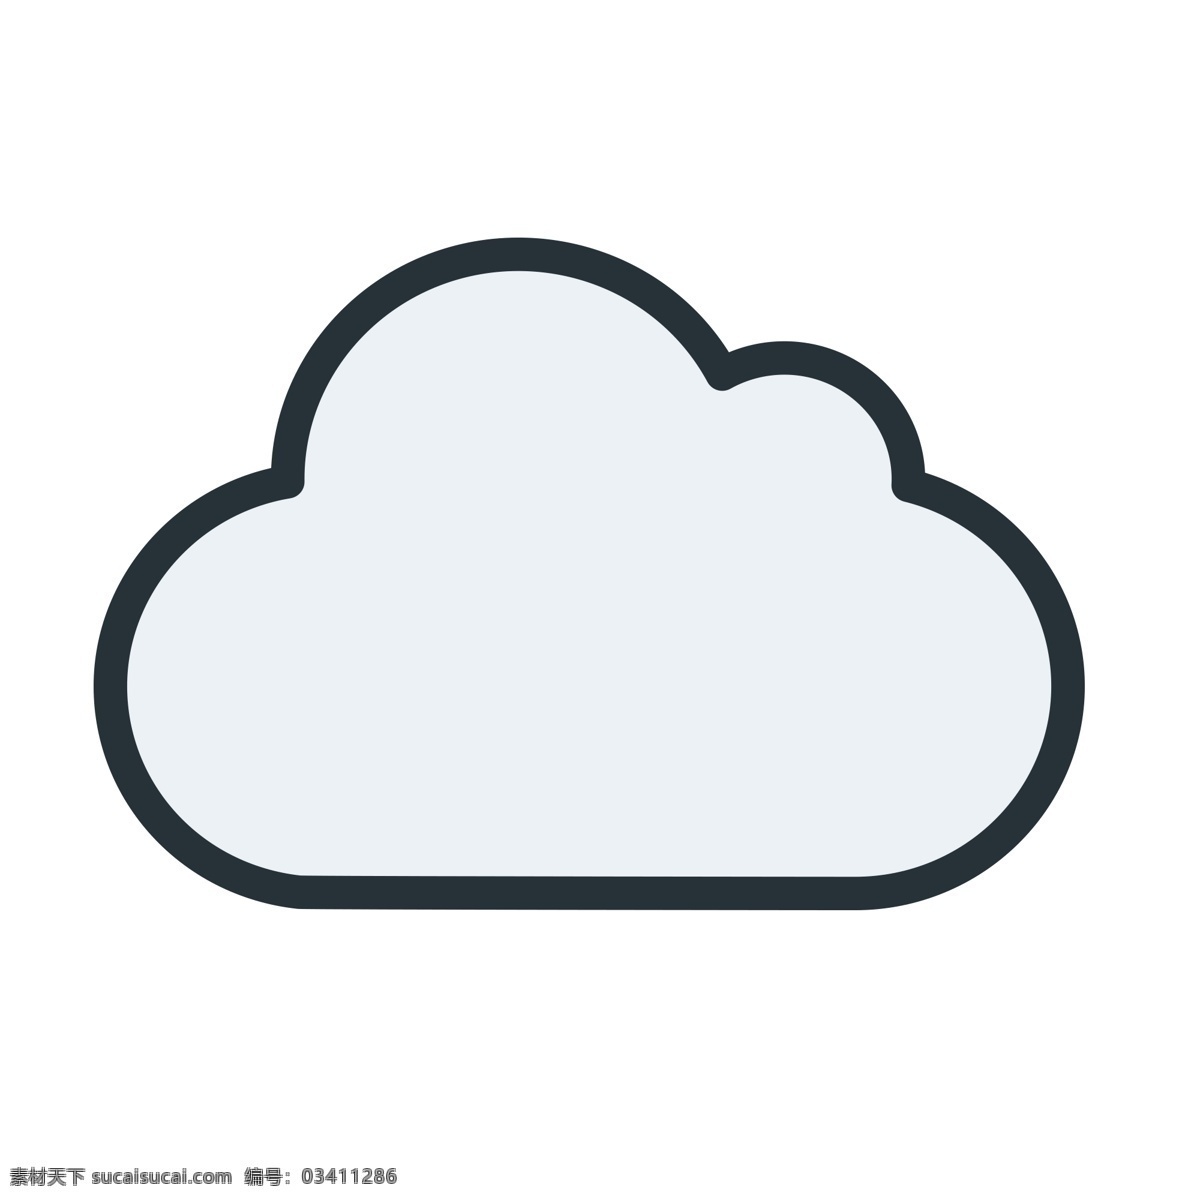 云朵图标 阴天 云朵 天气图标 扁平化ui ui图标 手机图标 界面ui 网页ui h5图标